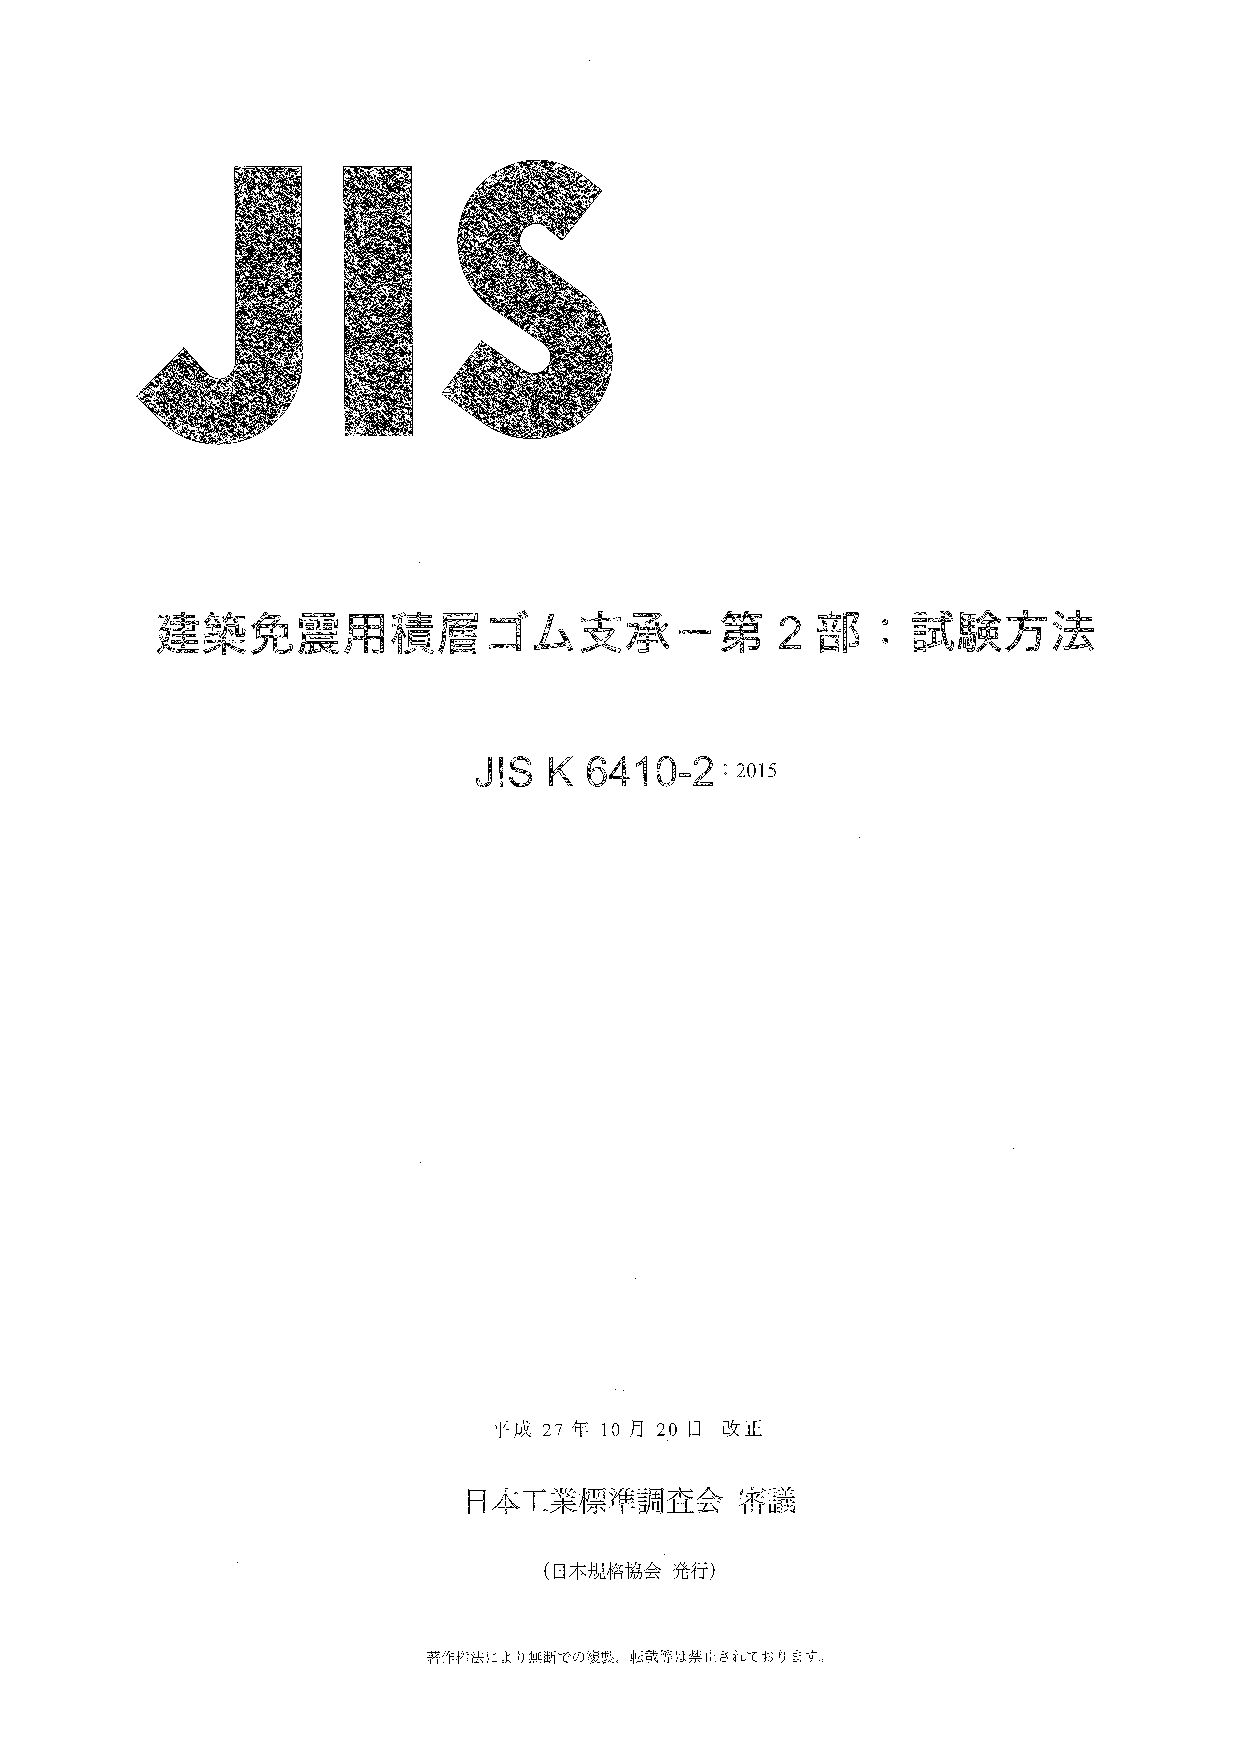 JIS K 6410-2:2015